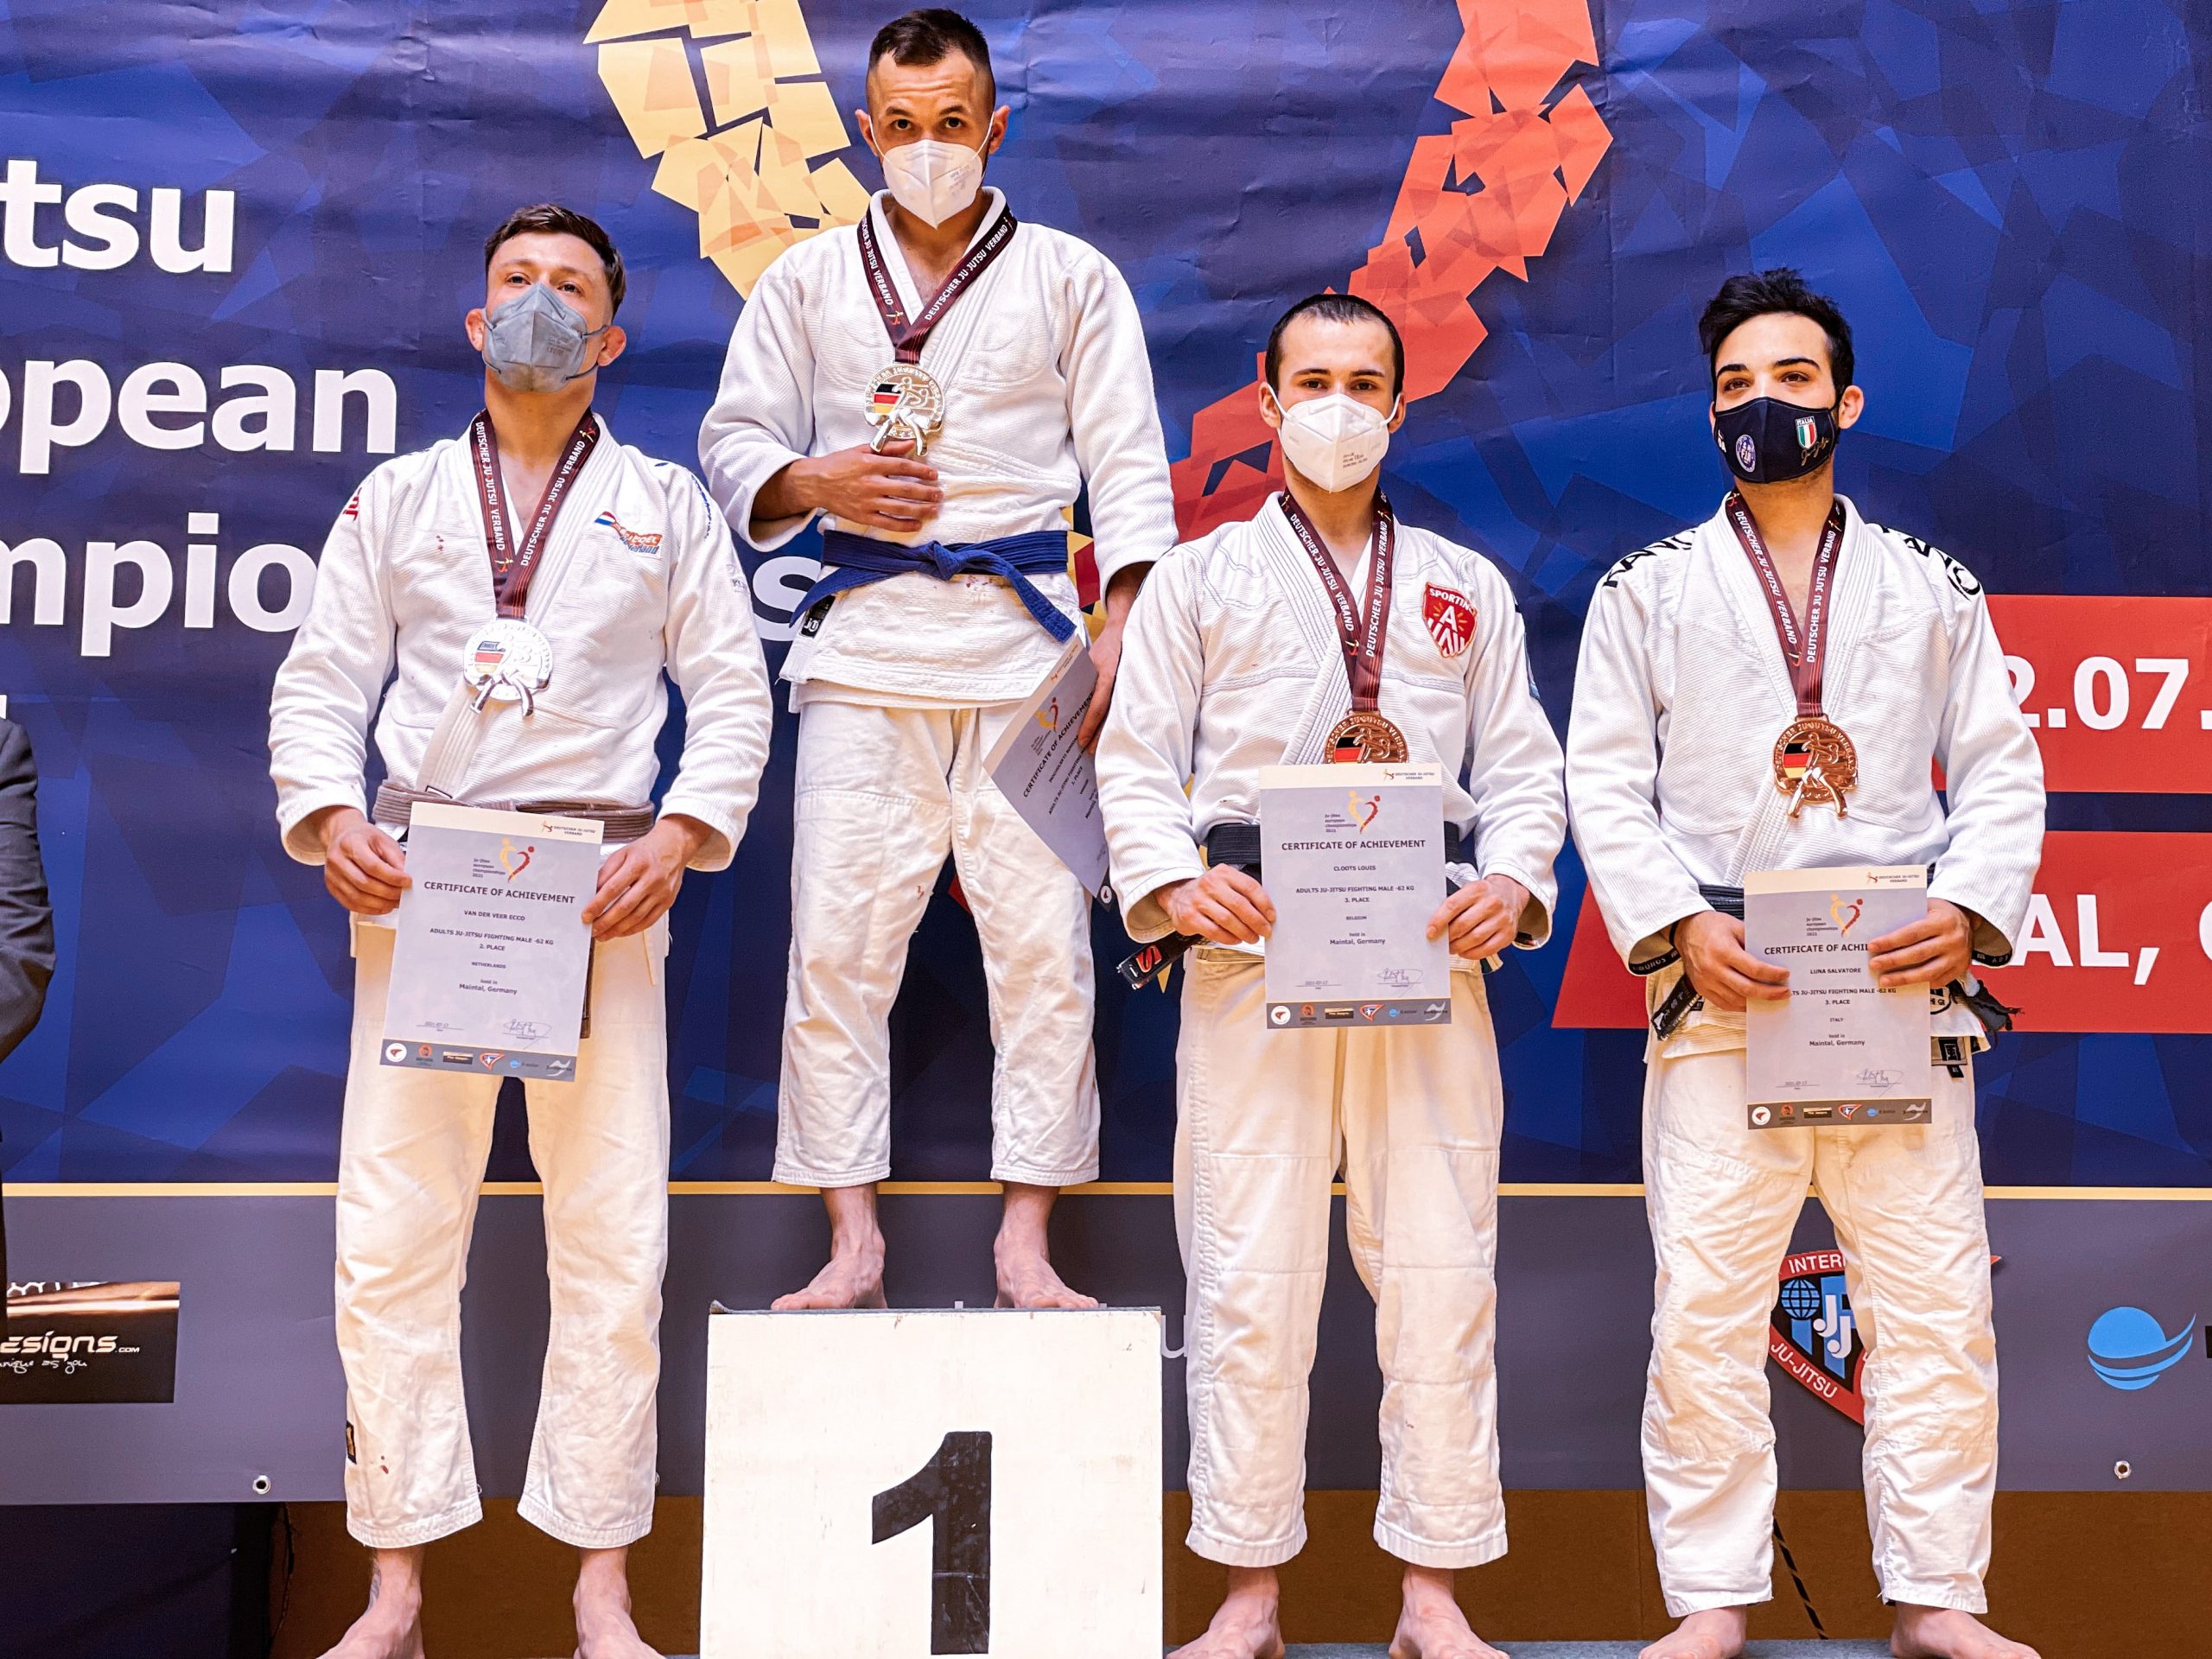 Antwerpenaar Louis Cloots pakt brons op Europees kampioenschap Ju-Jitsu